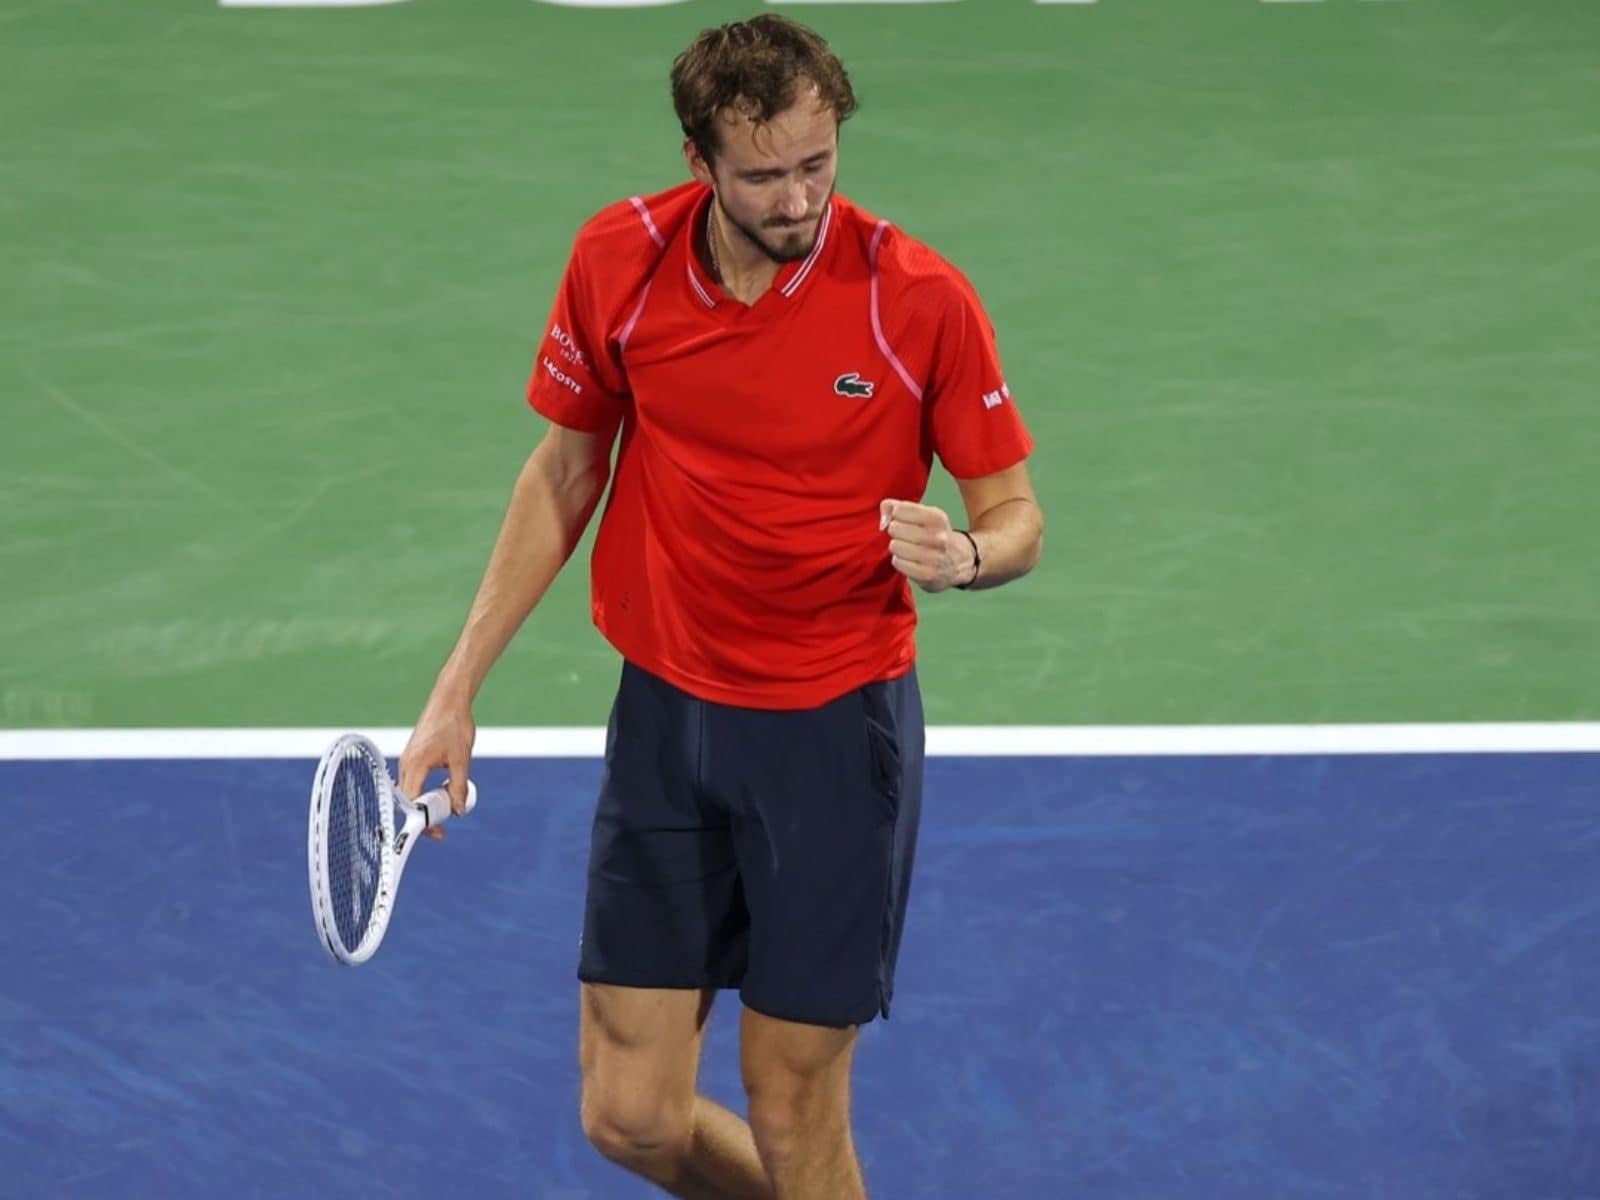 Medvedev beats Djokovic, to face Rublev in Dubai final